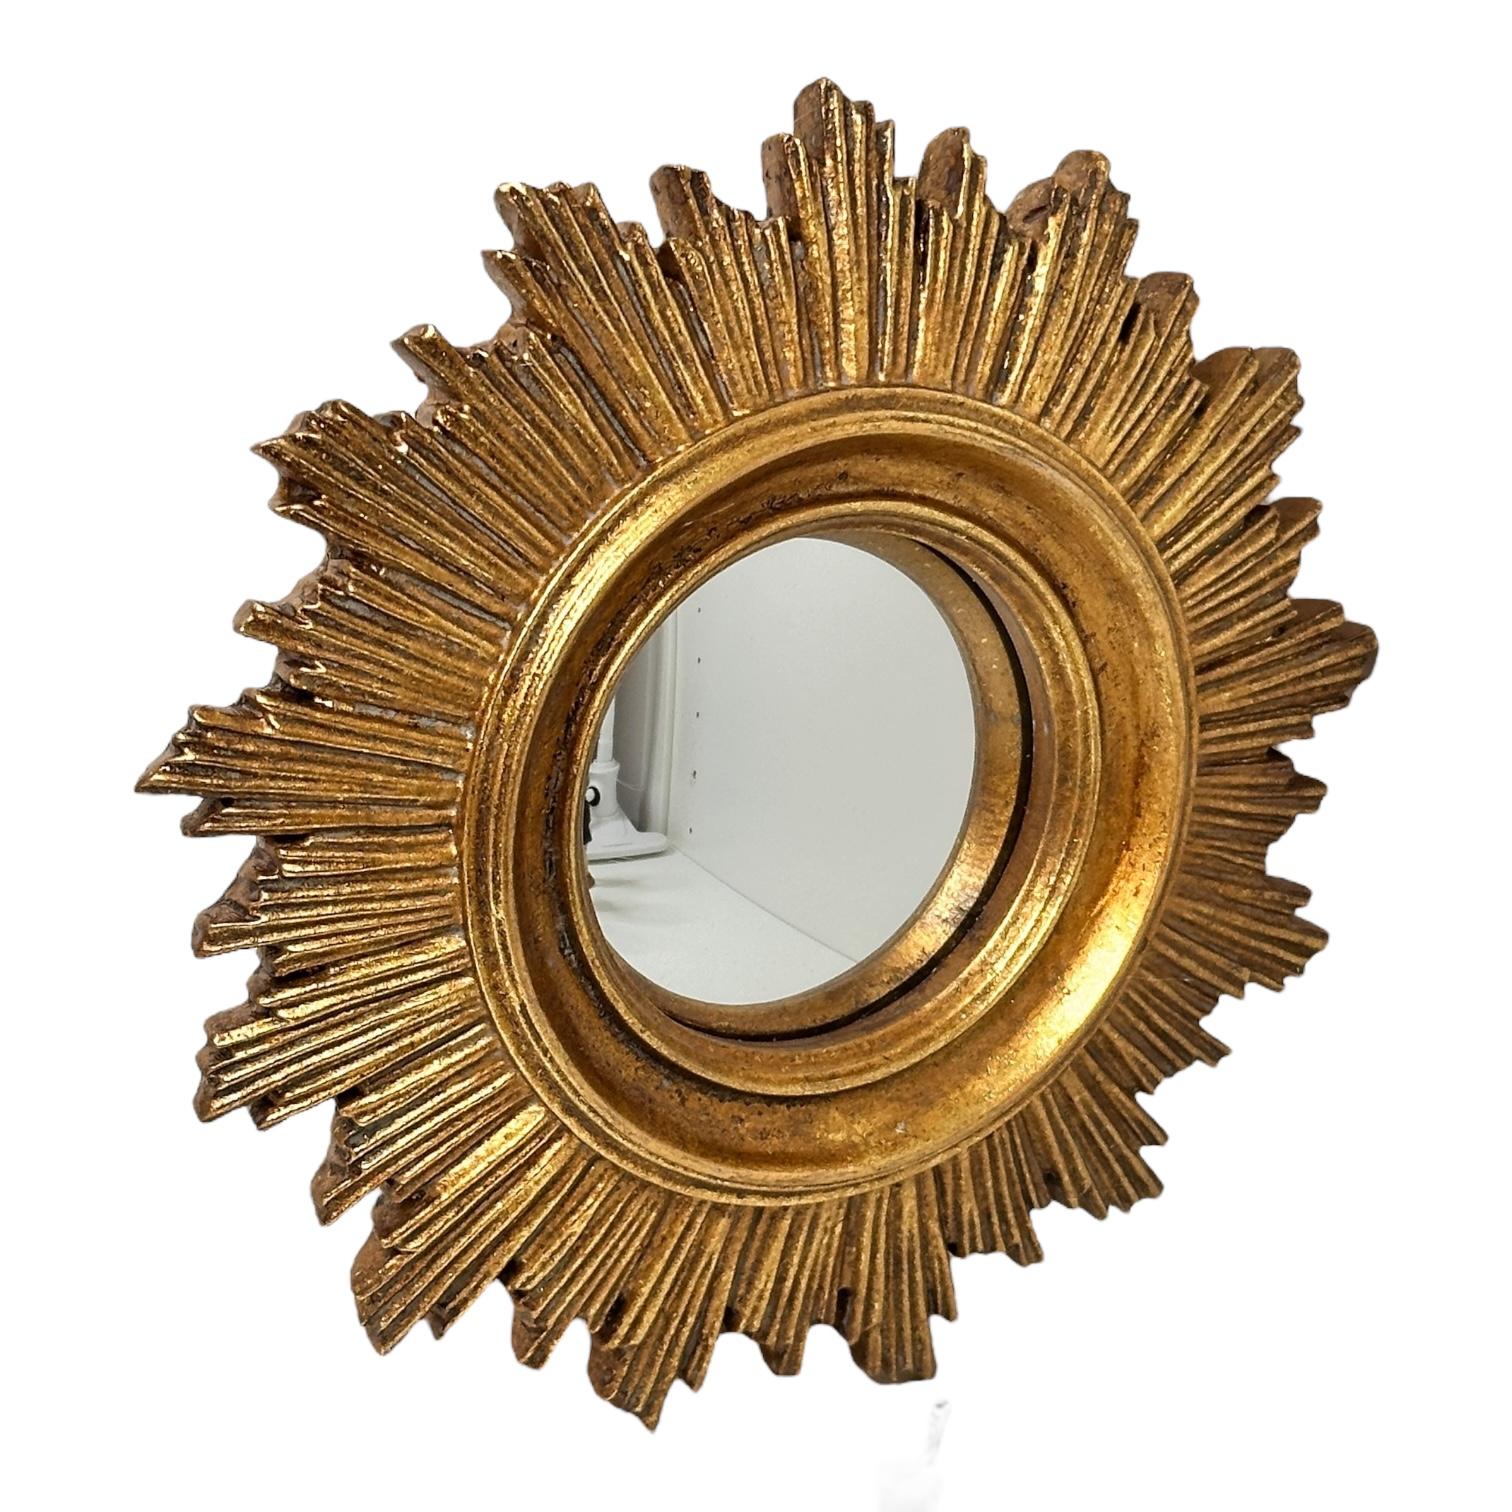 Un joli miroir en forme de soleil ou d'étoile. En composition dorée. Il mesure environ 7